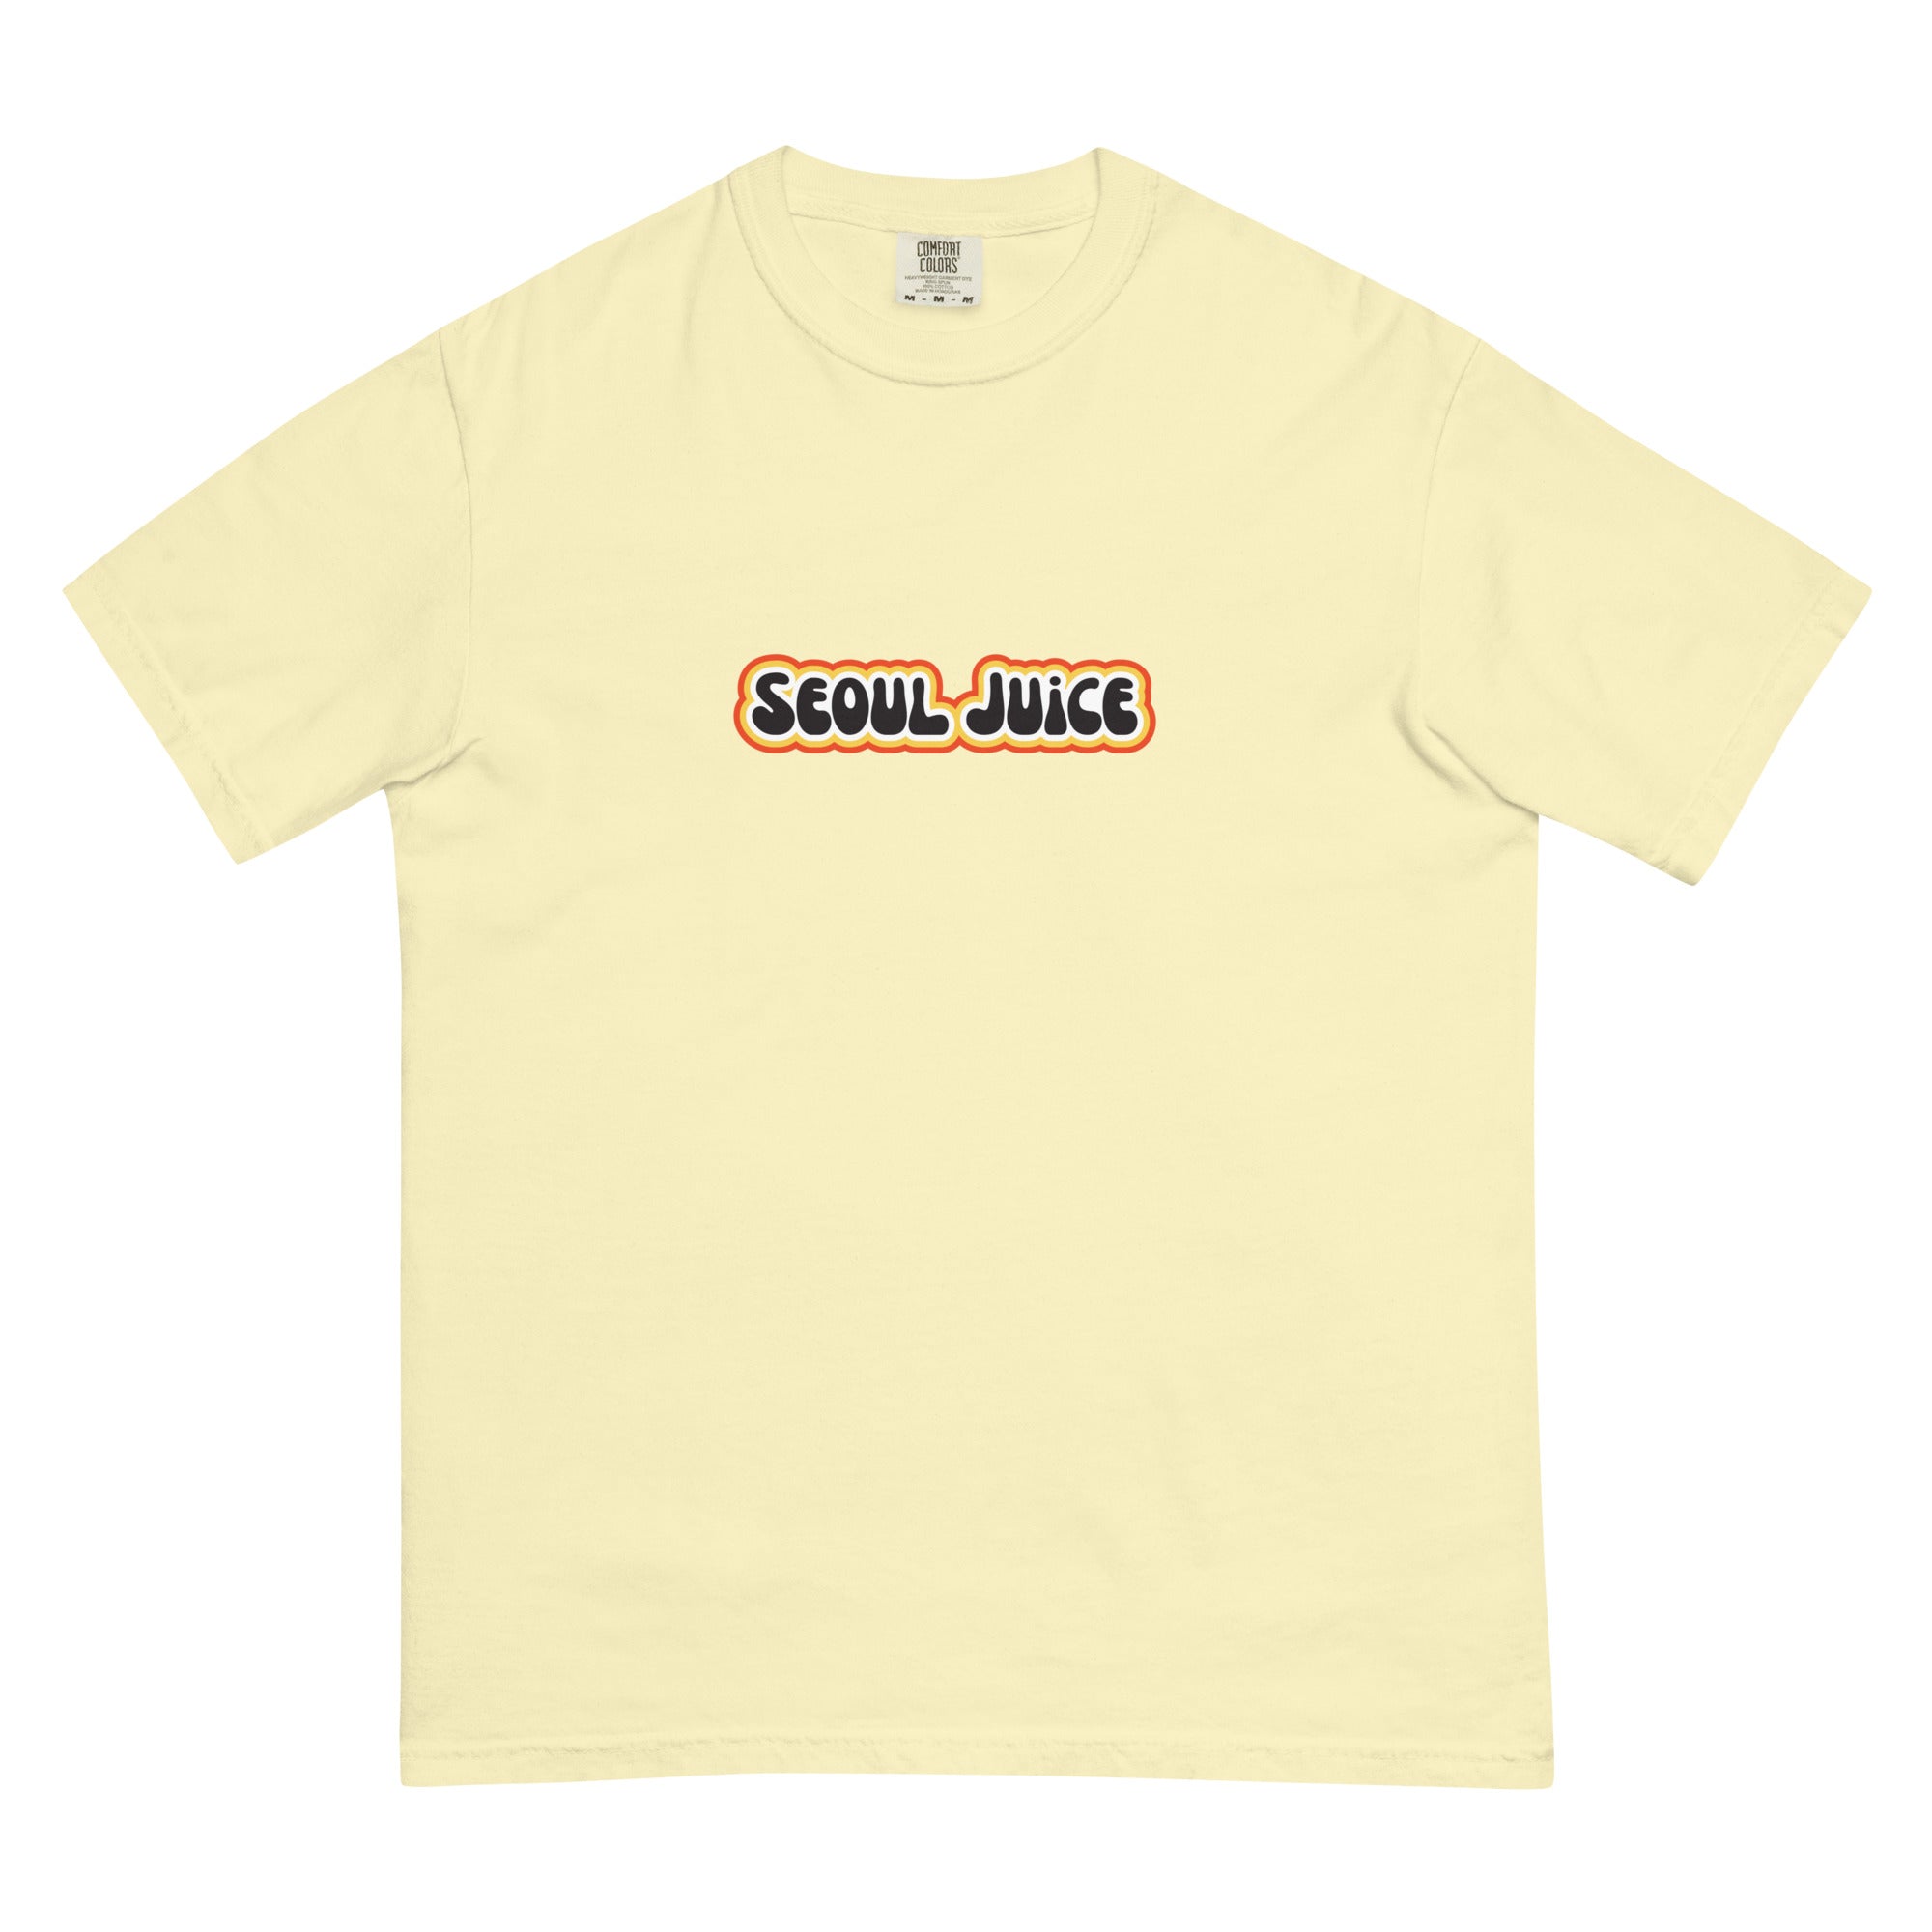 Seoul Juice Center Spun T-Shirt